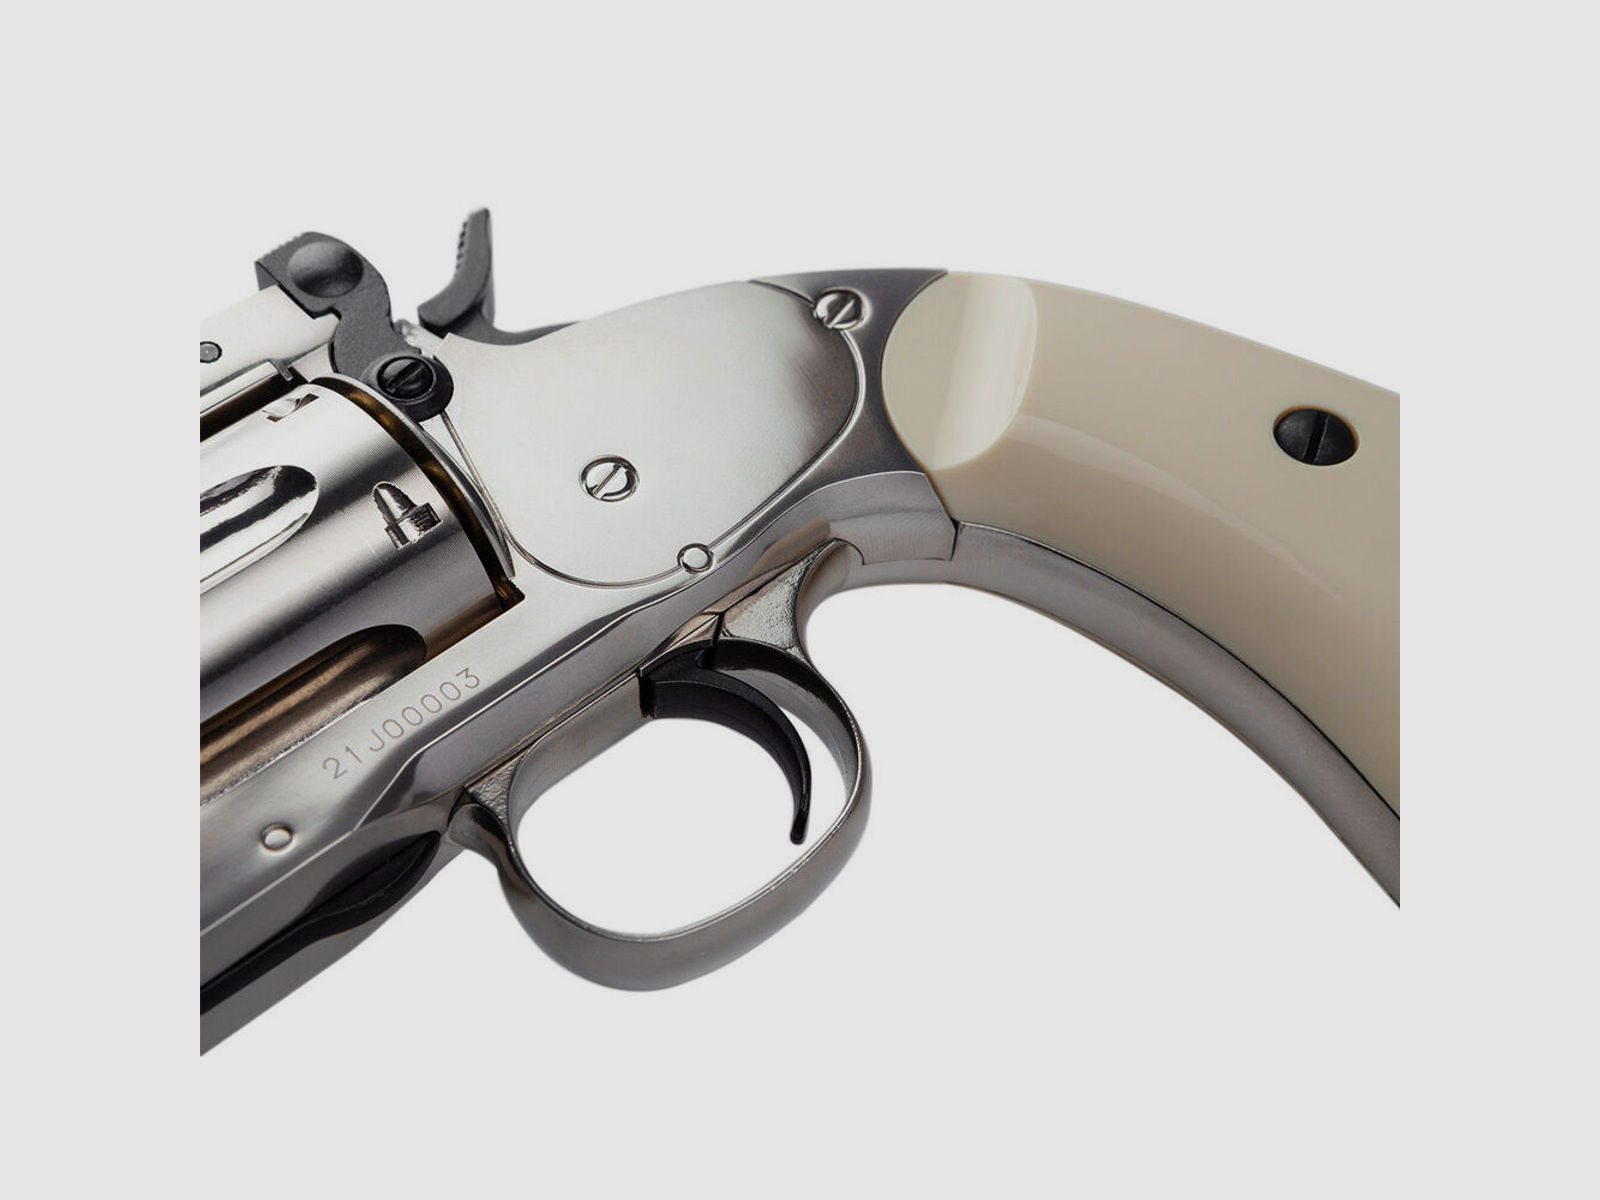 ASG	 Schofield CO2 Revolver 6 Zoll 4,5mm Diabolo Silver & Ivory